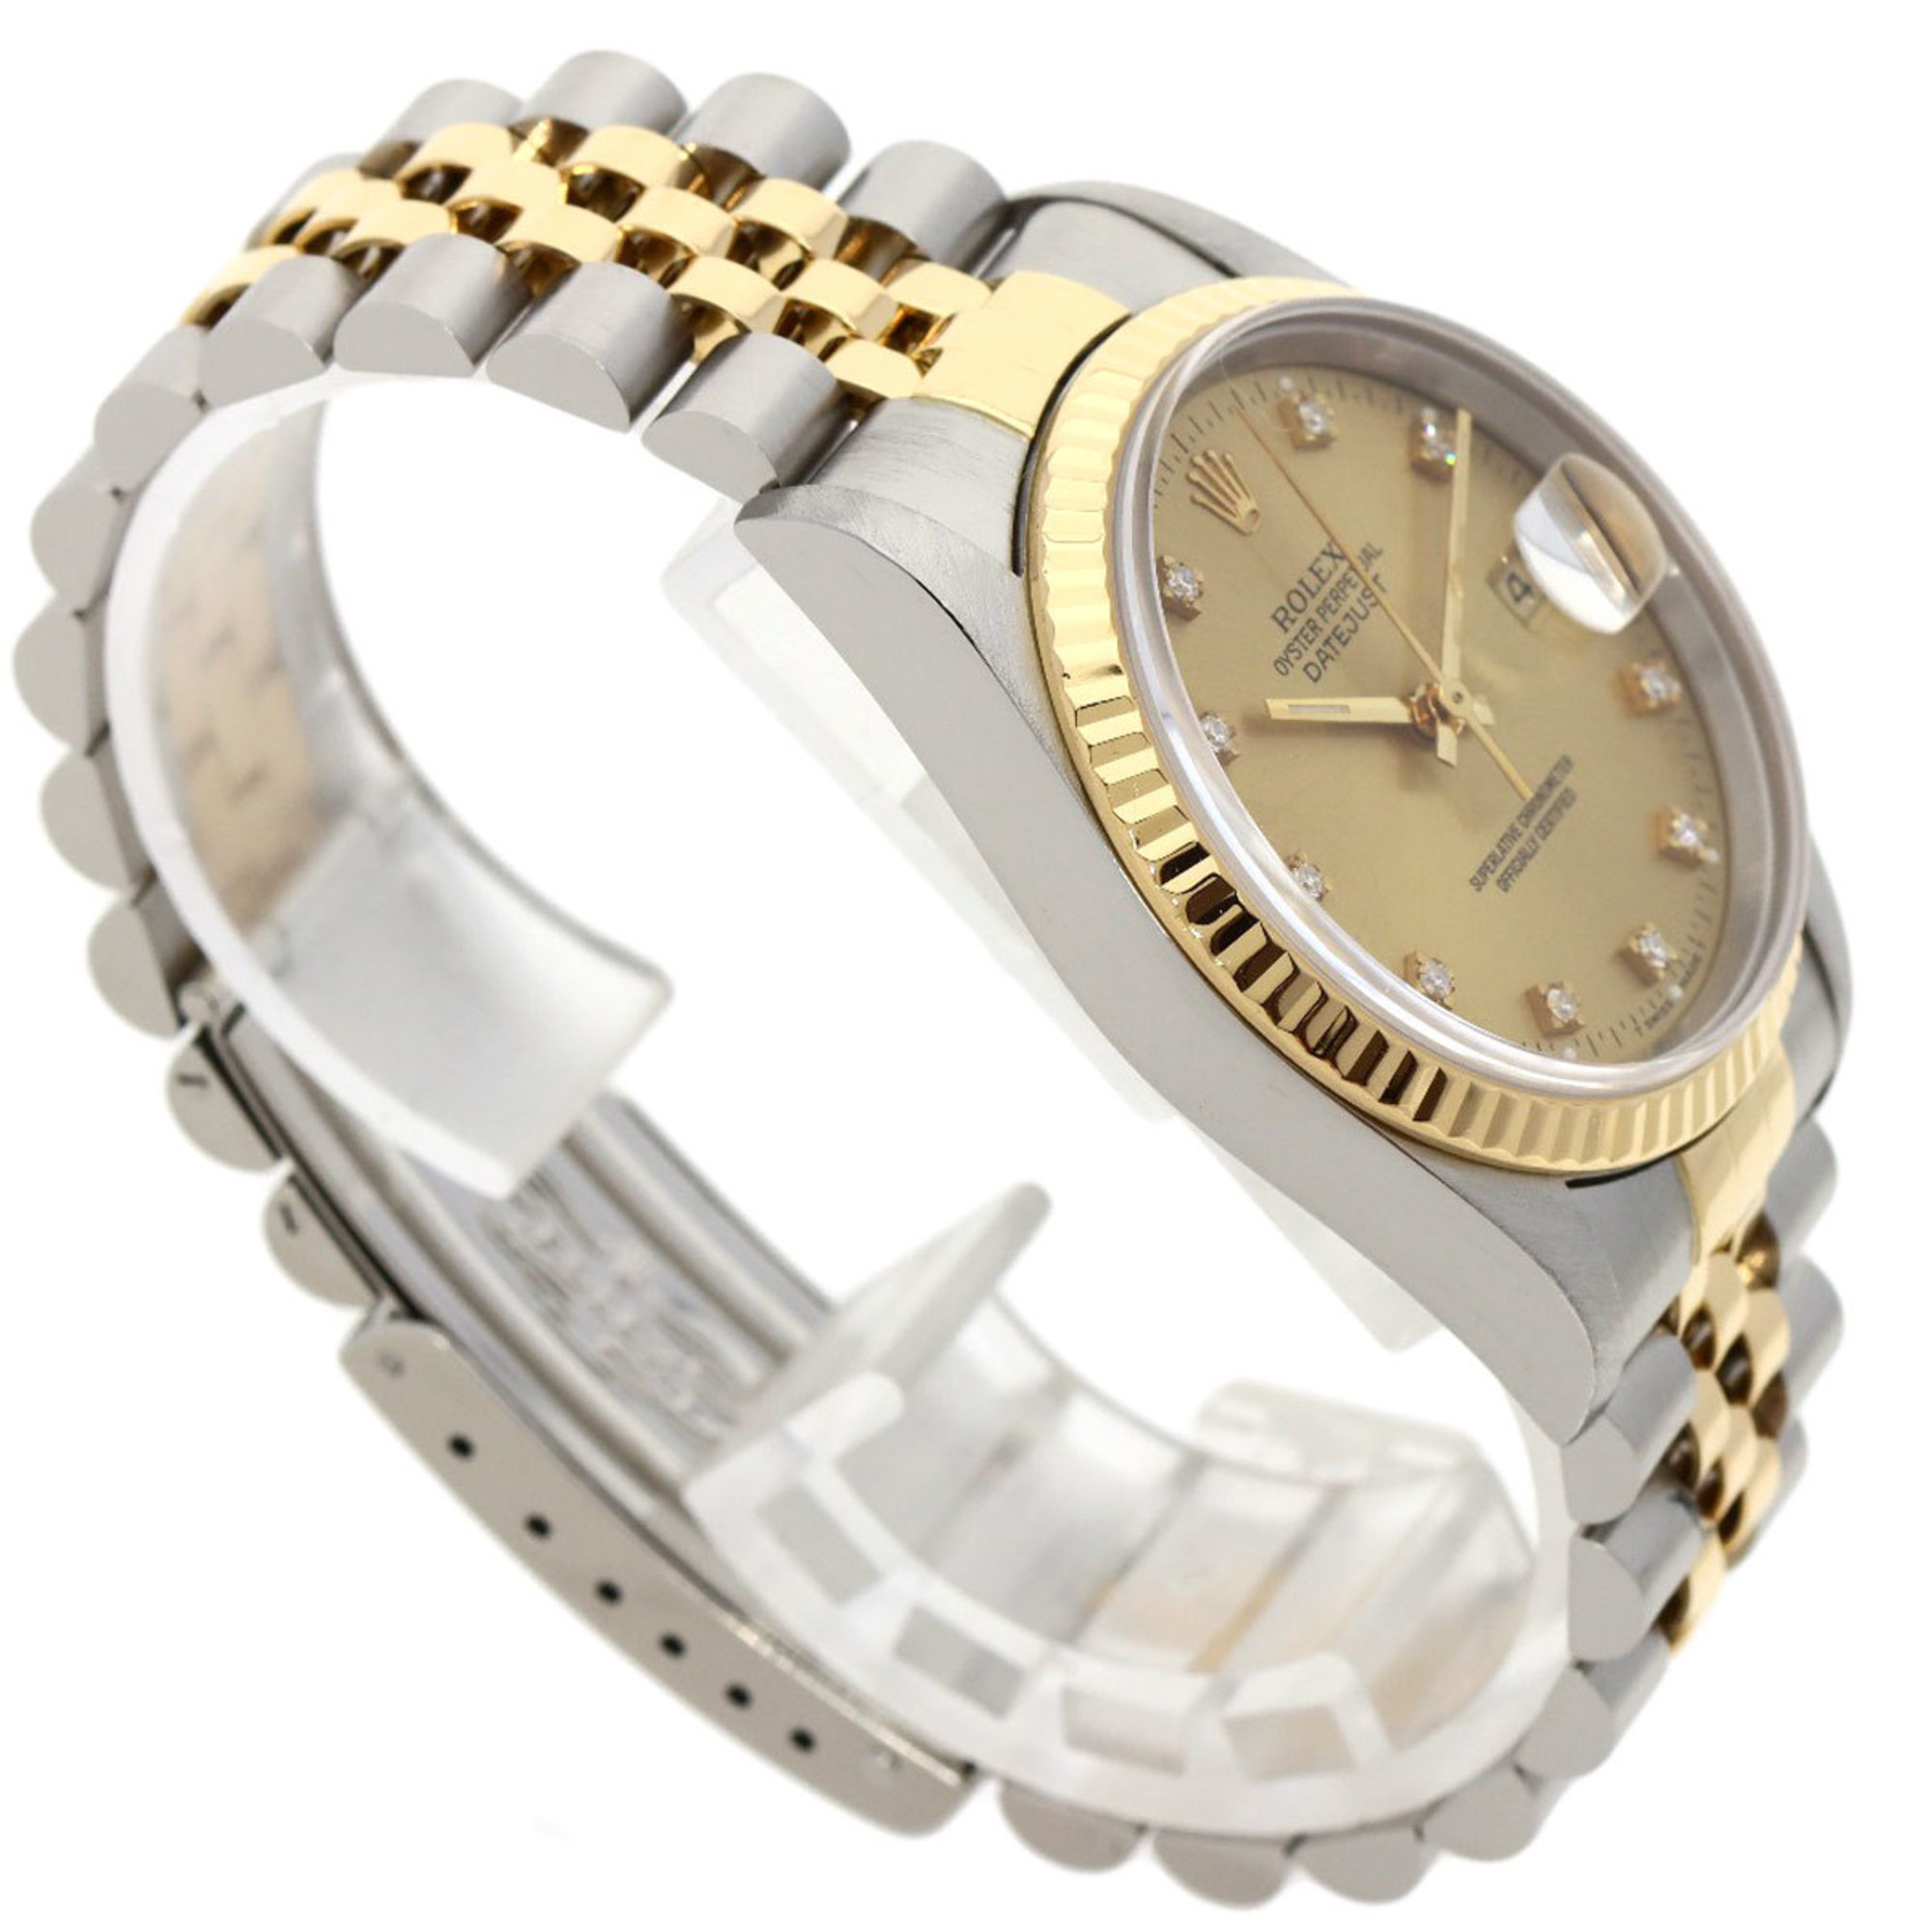 Rolex 16233G Datejust 10P Diamond Watch Stainless Steel/SSxK18YG Men's ROLEX